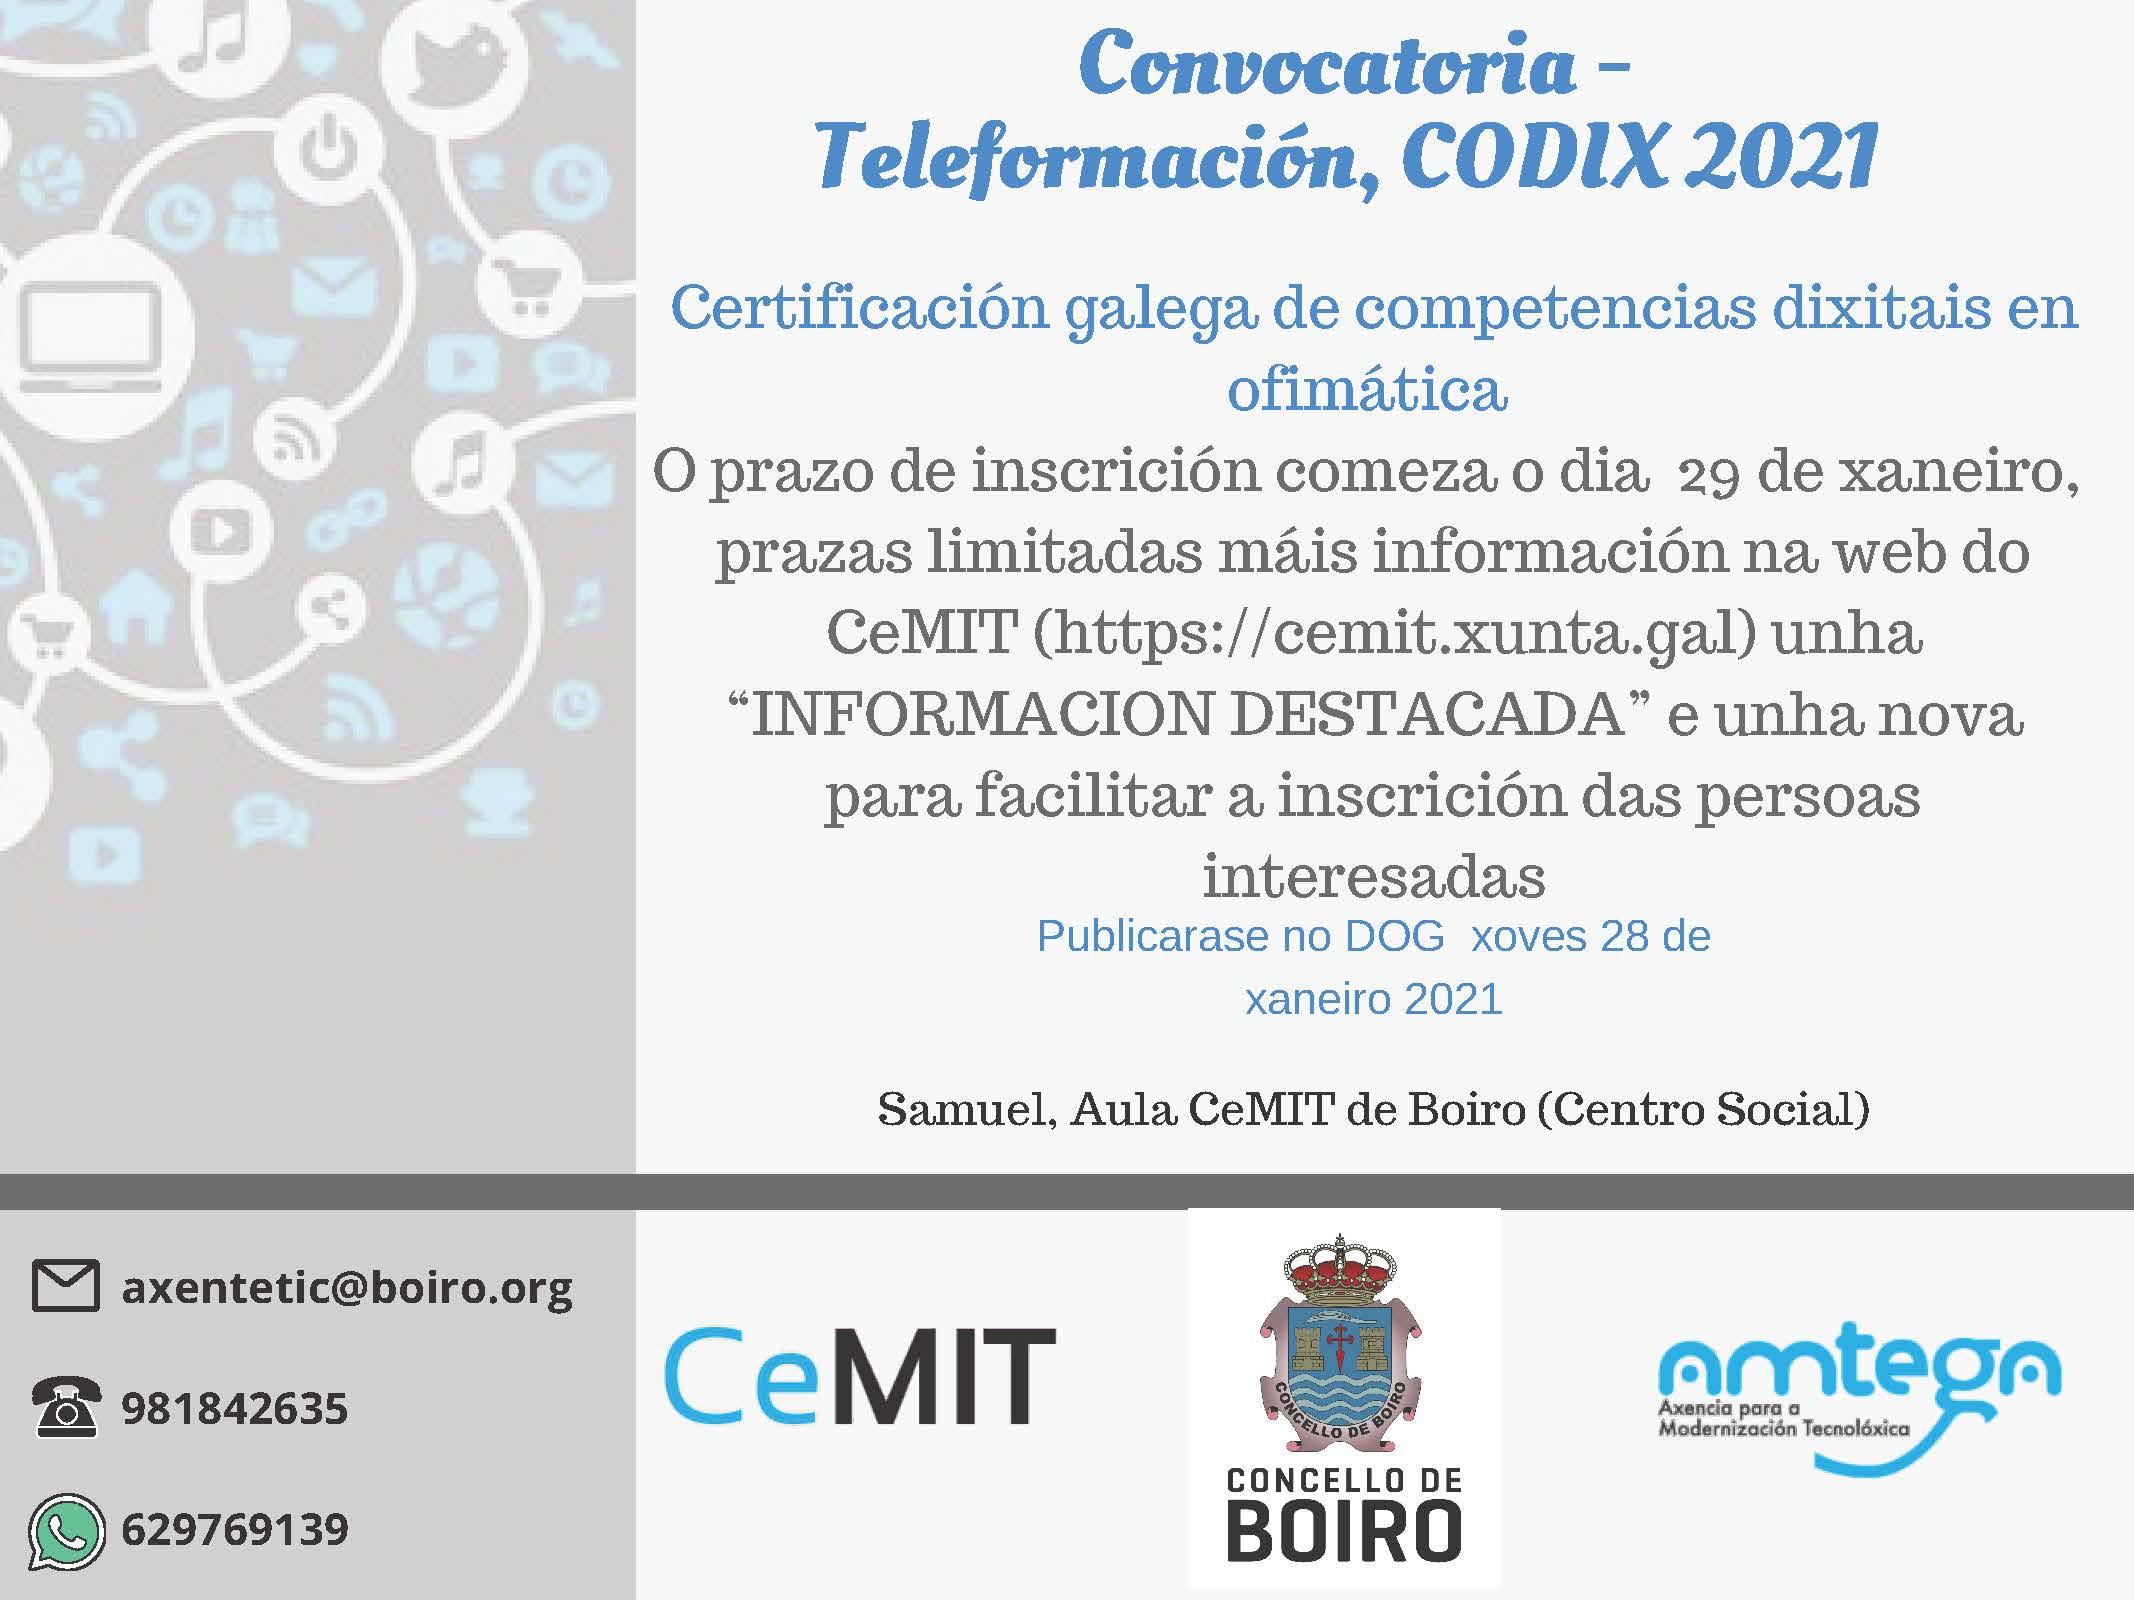 Teleformación CODIX 2021 | Concello de Boiro 